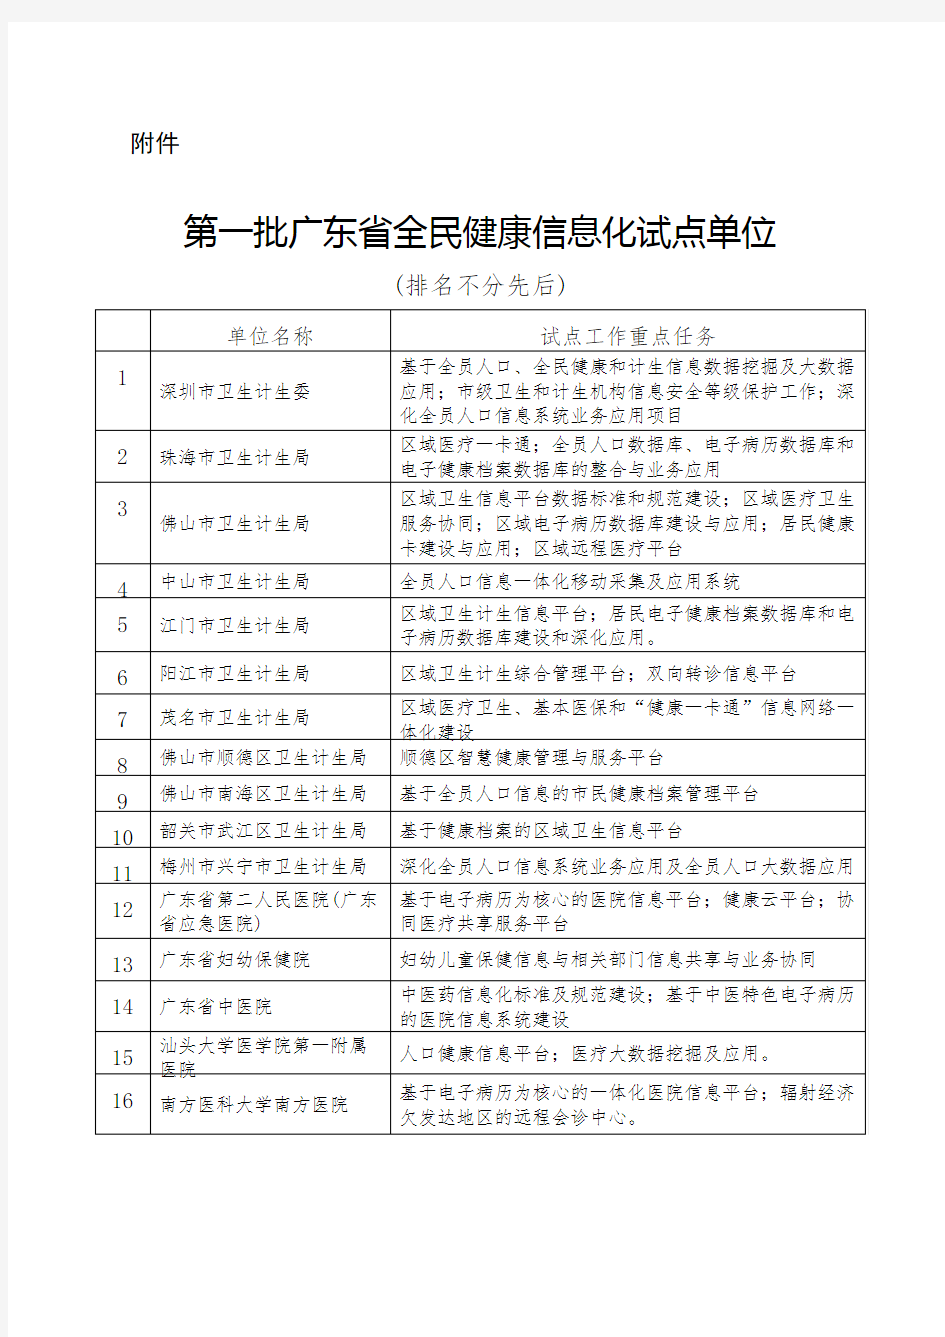 广东省全民健康信息化第一批试点单位名单